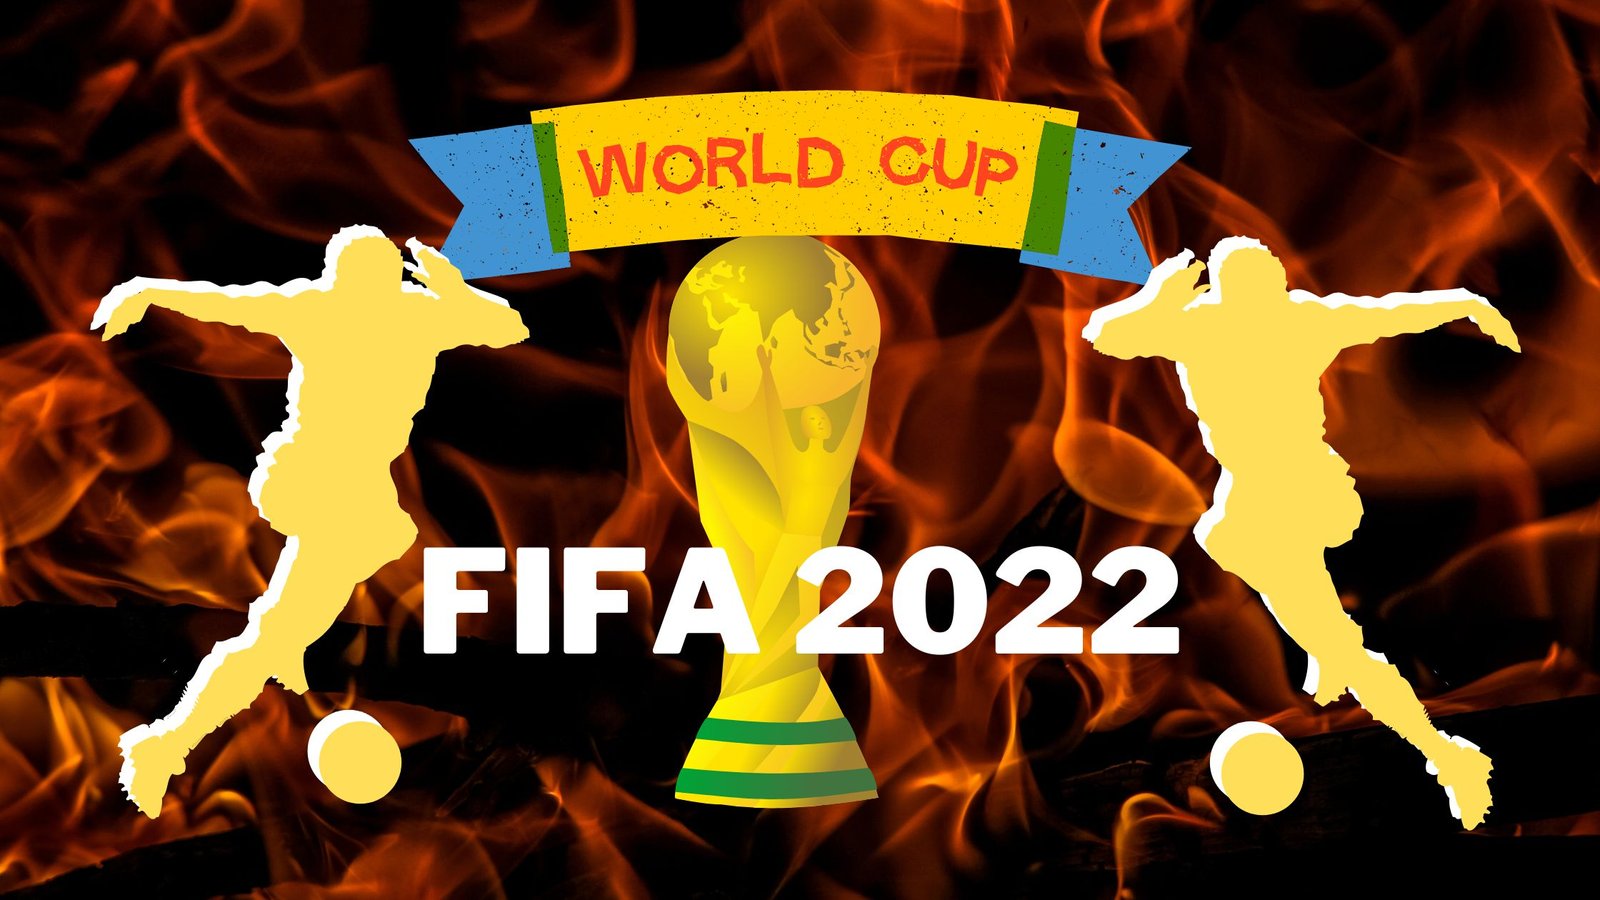 Fifa World Cup 2022 फीफा विश्व कप 2022 कतर टूर्नामेंट के लिए तिथियां ड्रा शेड्यूल किक ऑफ 1039